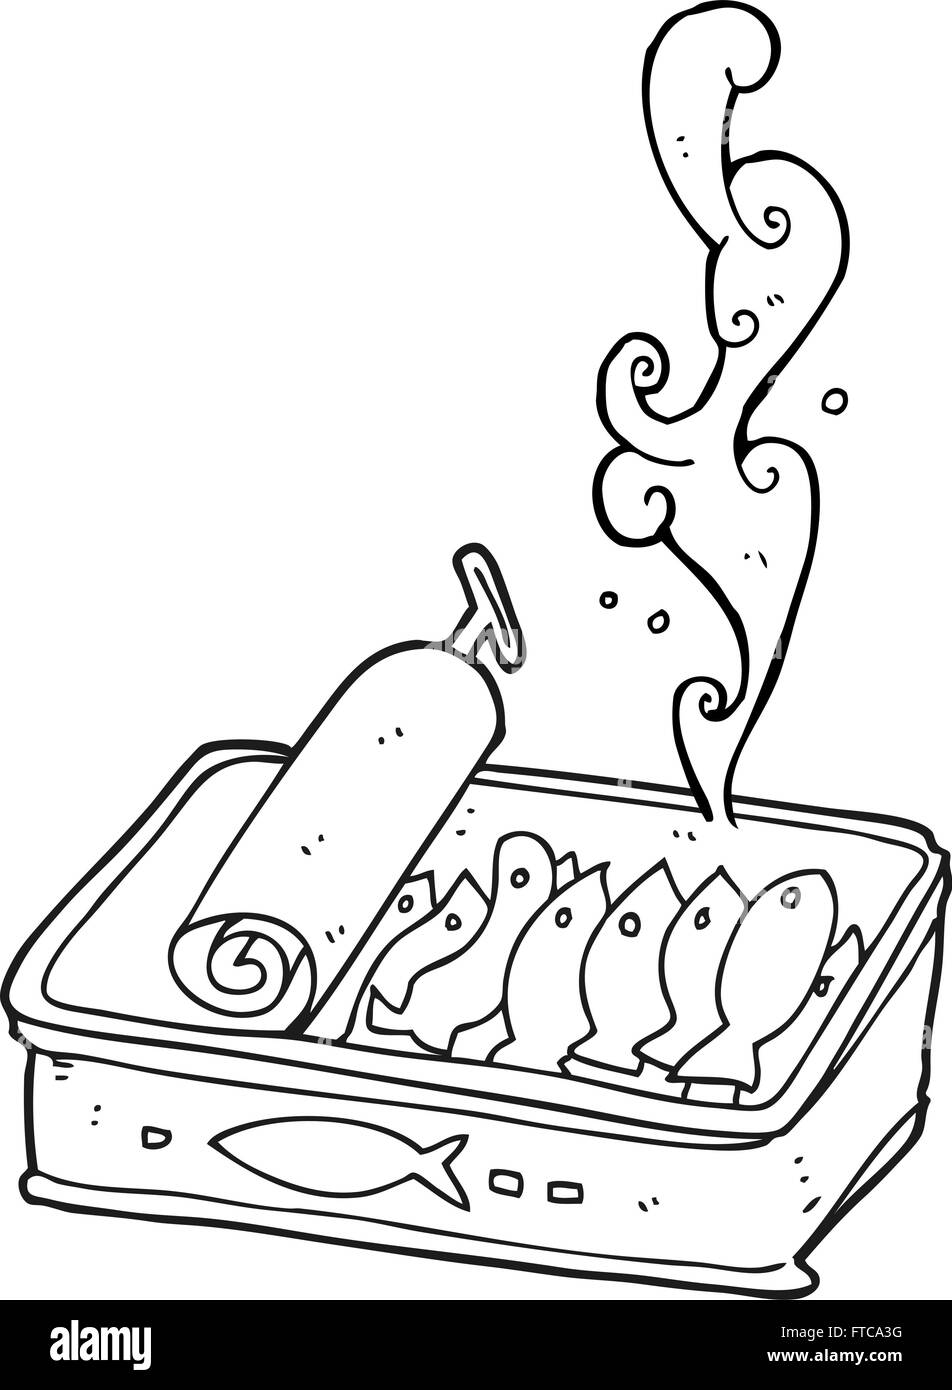 Noir et blanc dessiné à main levée de caricature peut être de sardines Illustration de Vecteur